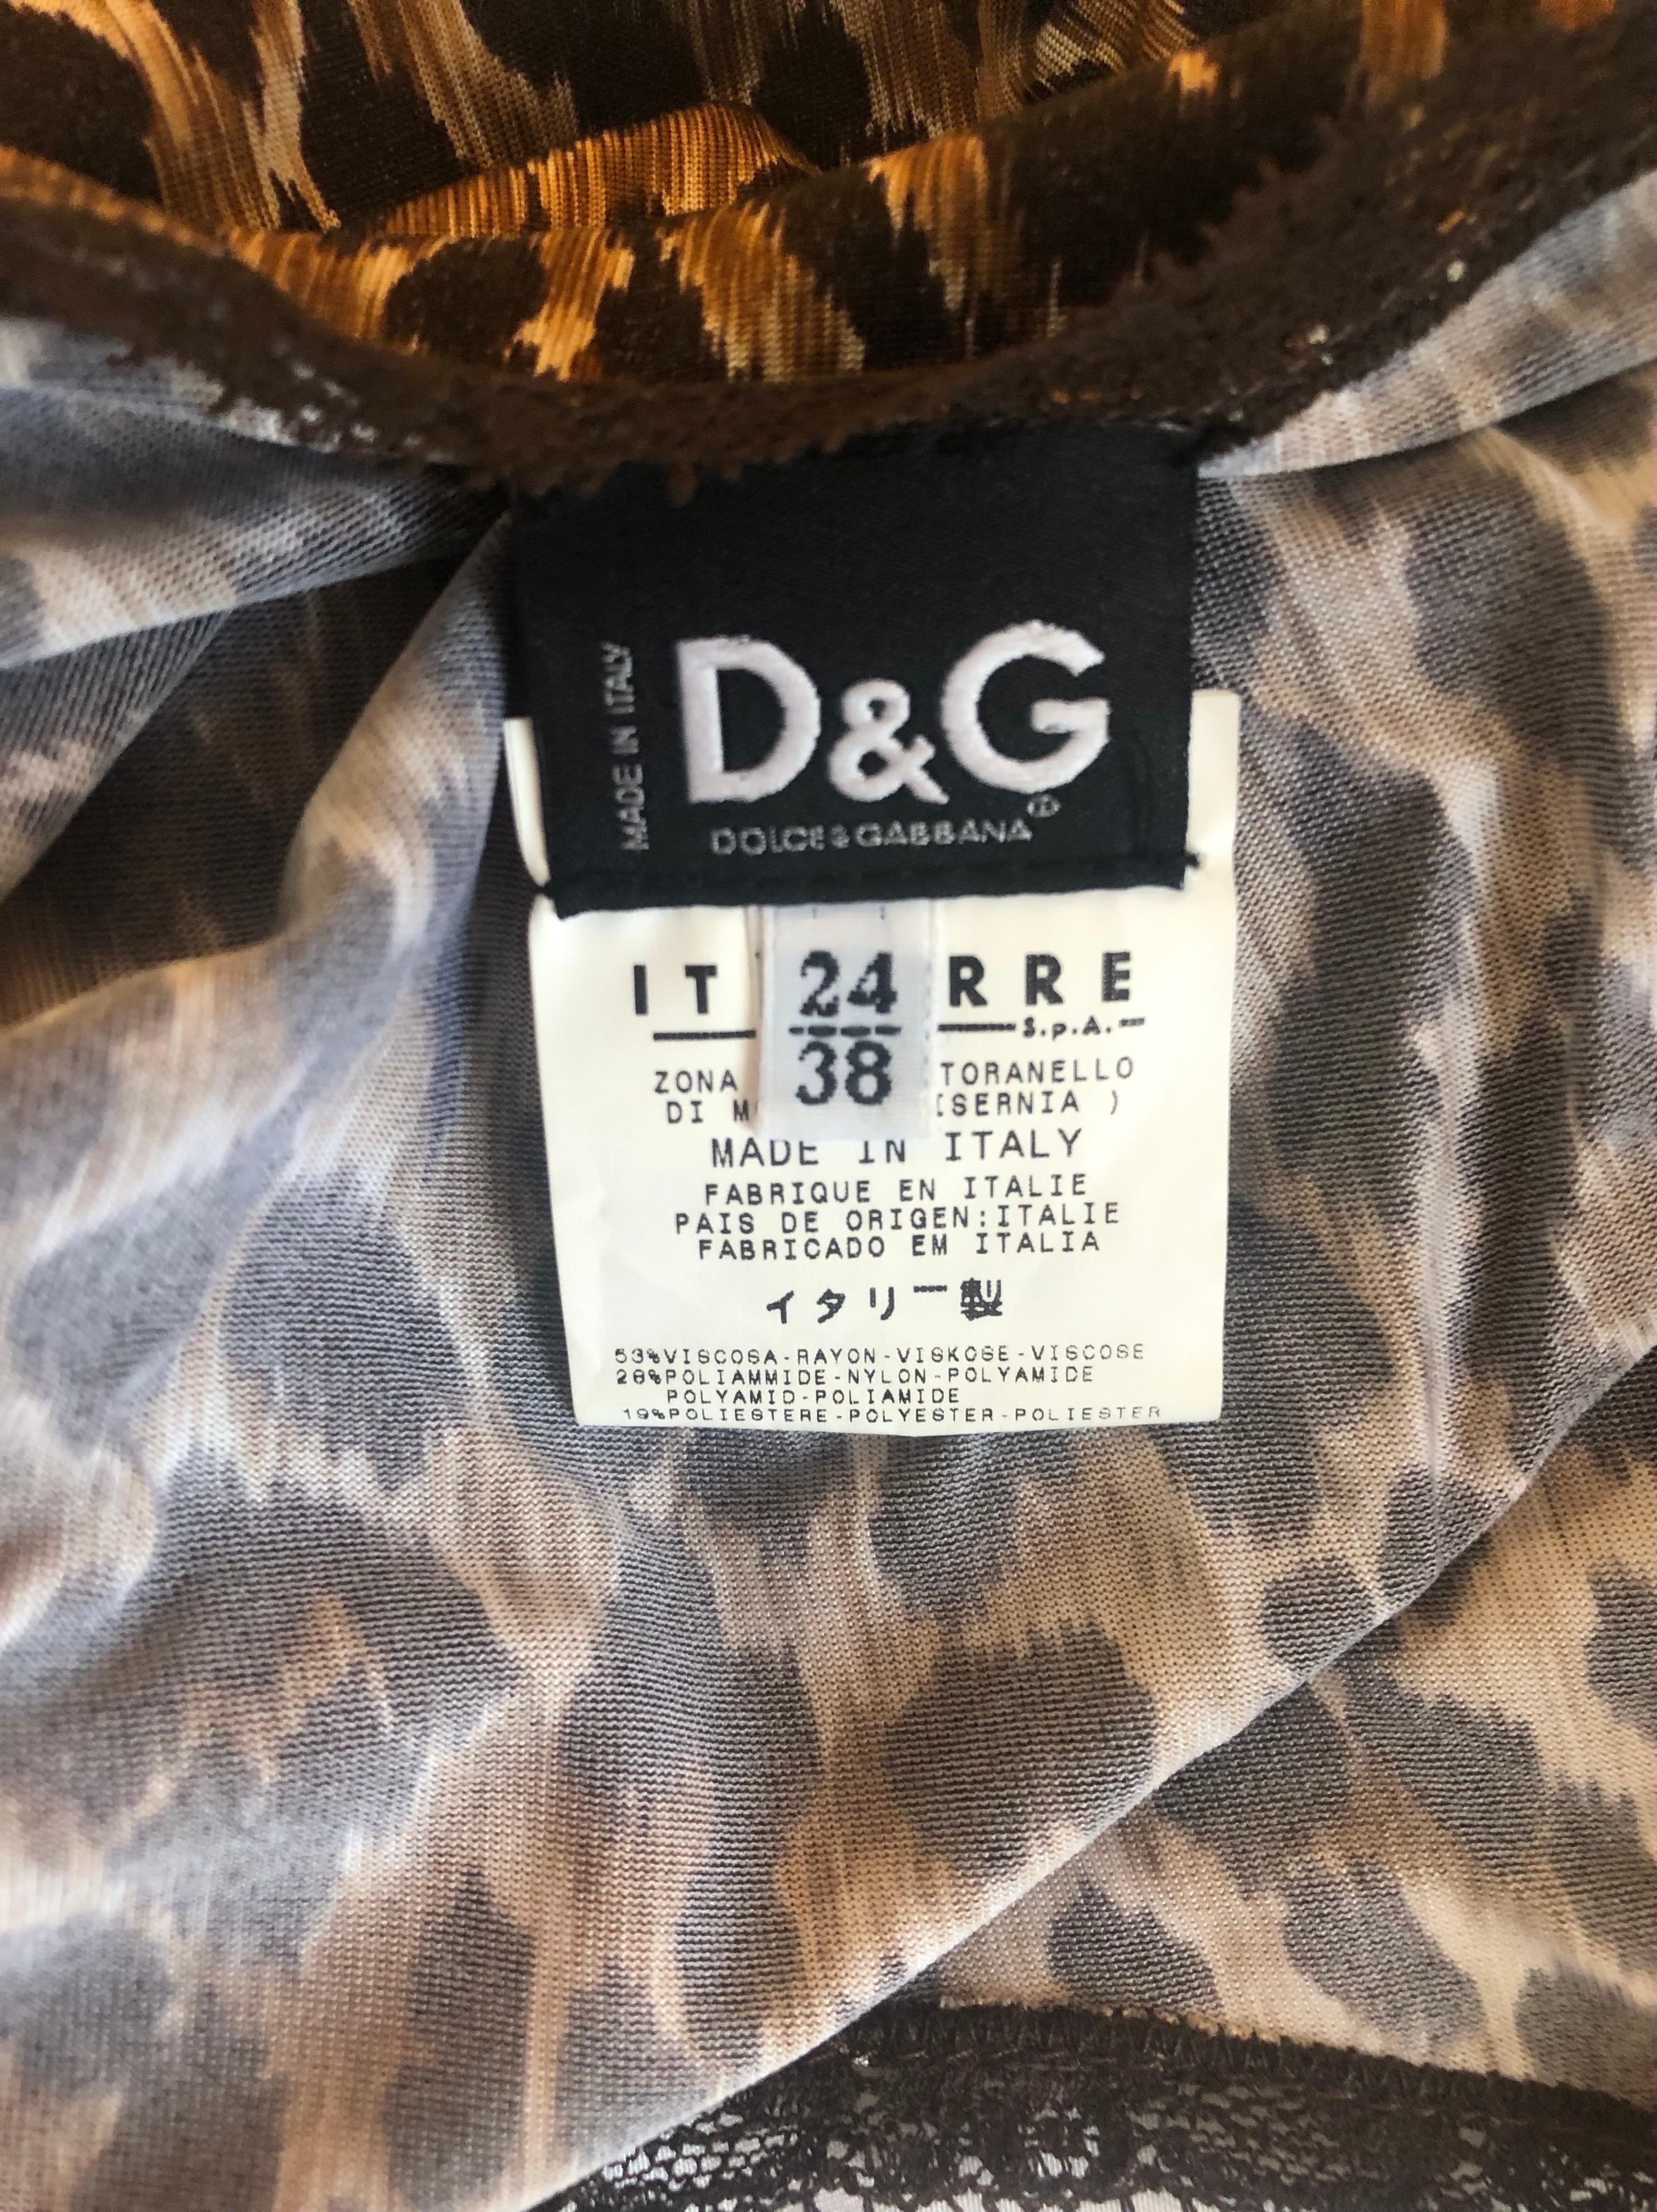 Beautiful vintage D&G Dolce & Gabbana leopard print dress. Excellent condition. 